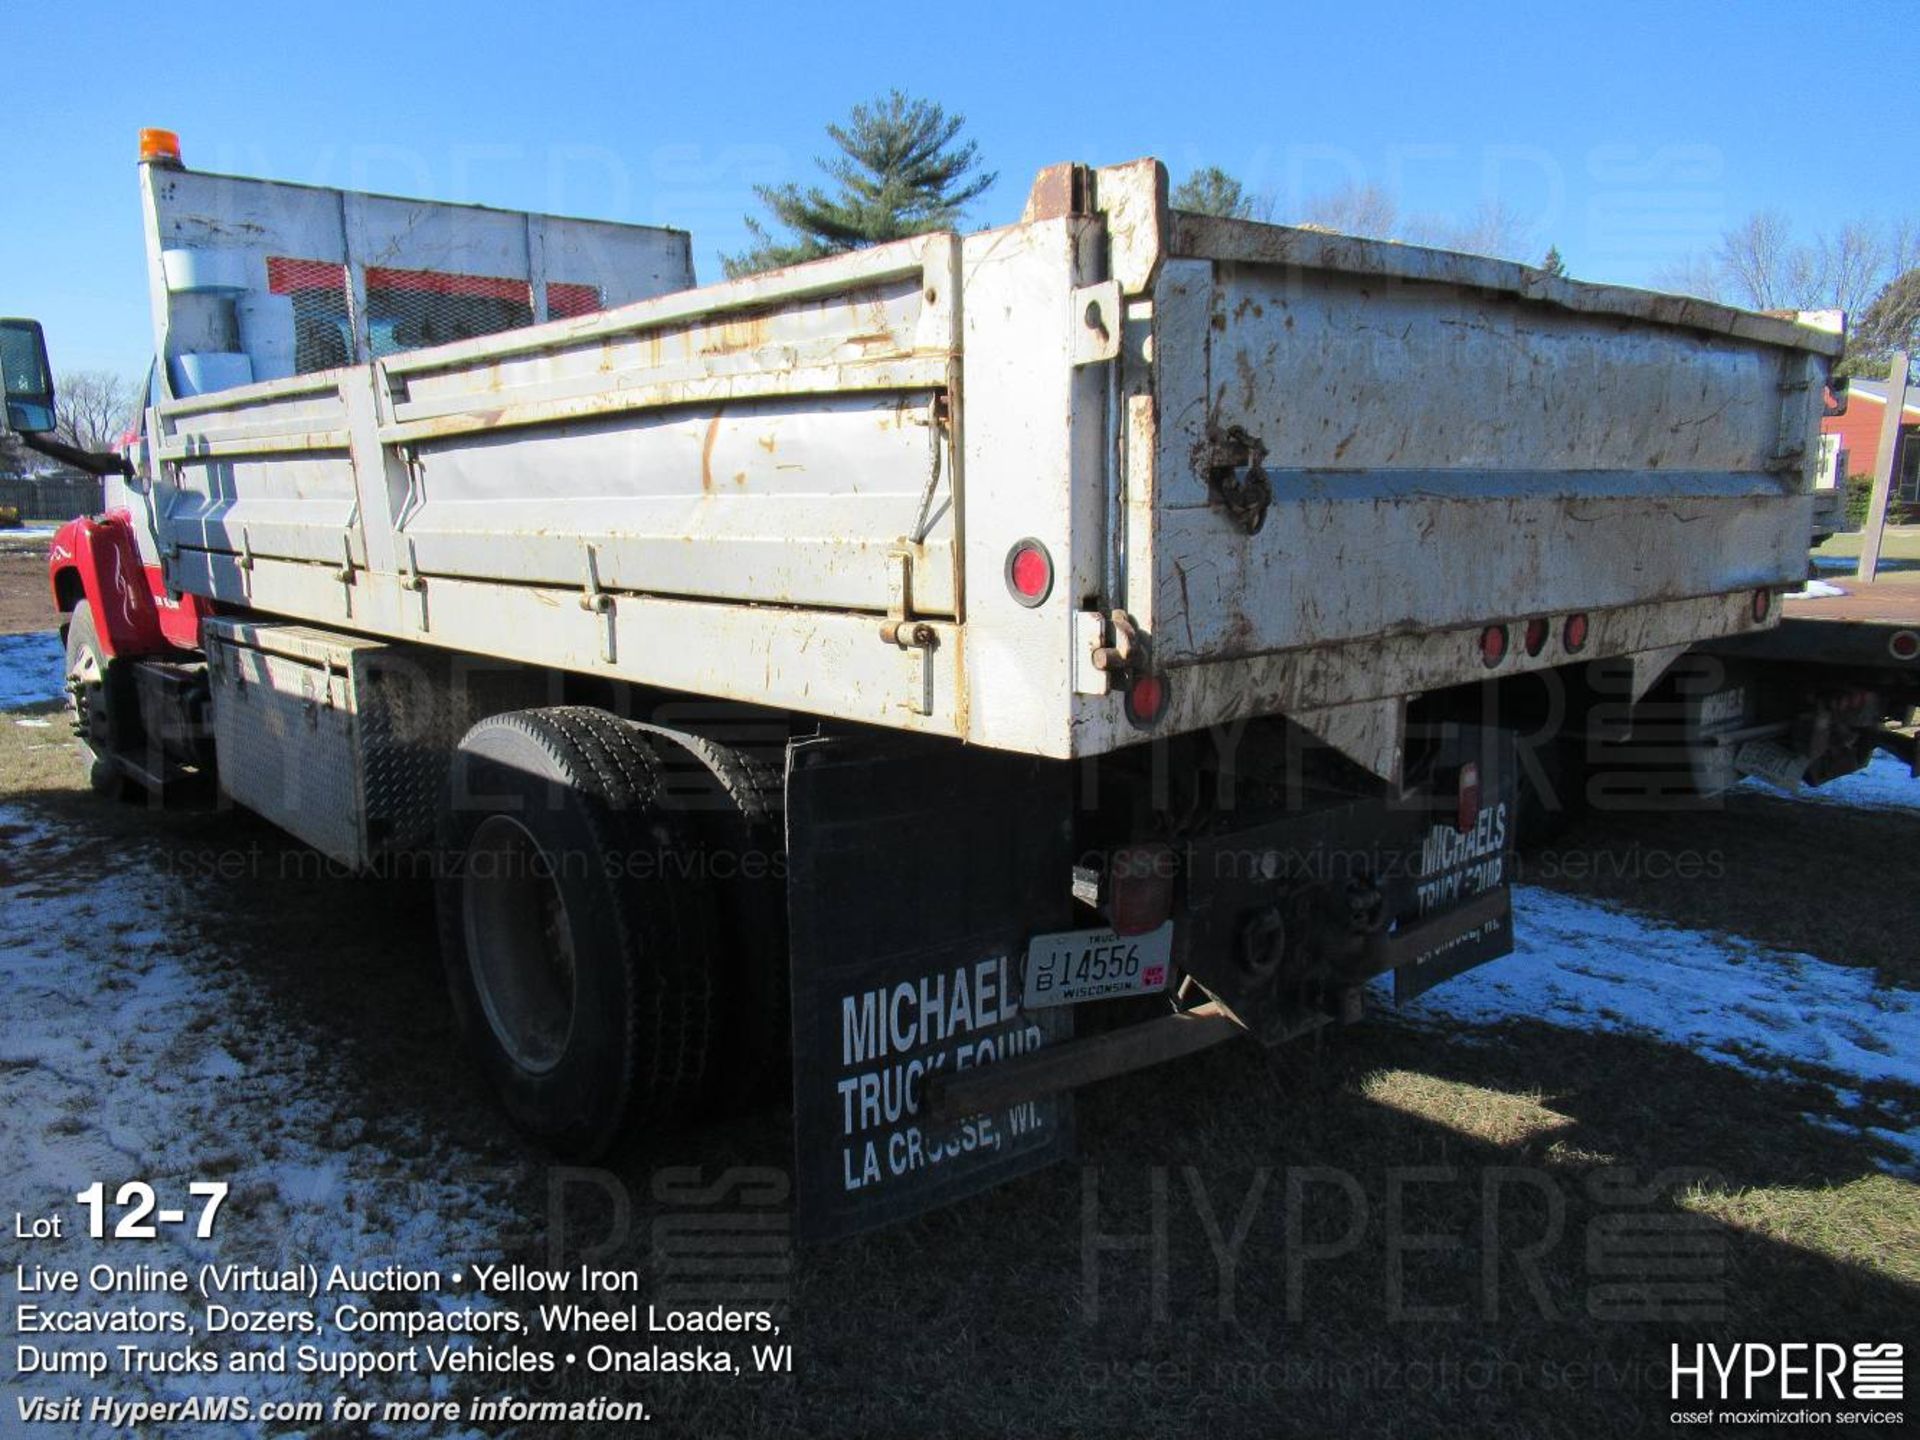 2003 Chevrolet 8500 Dump Truck - Image 7 of 8